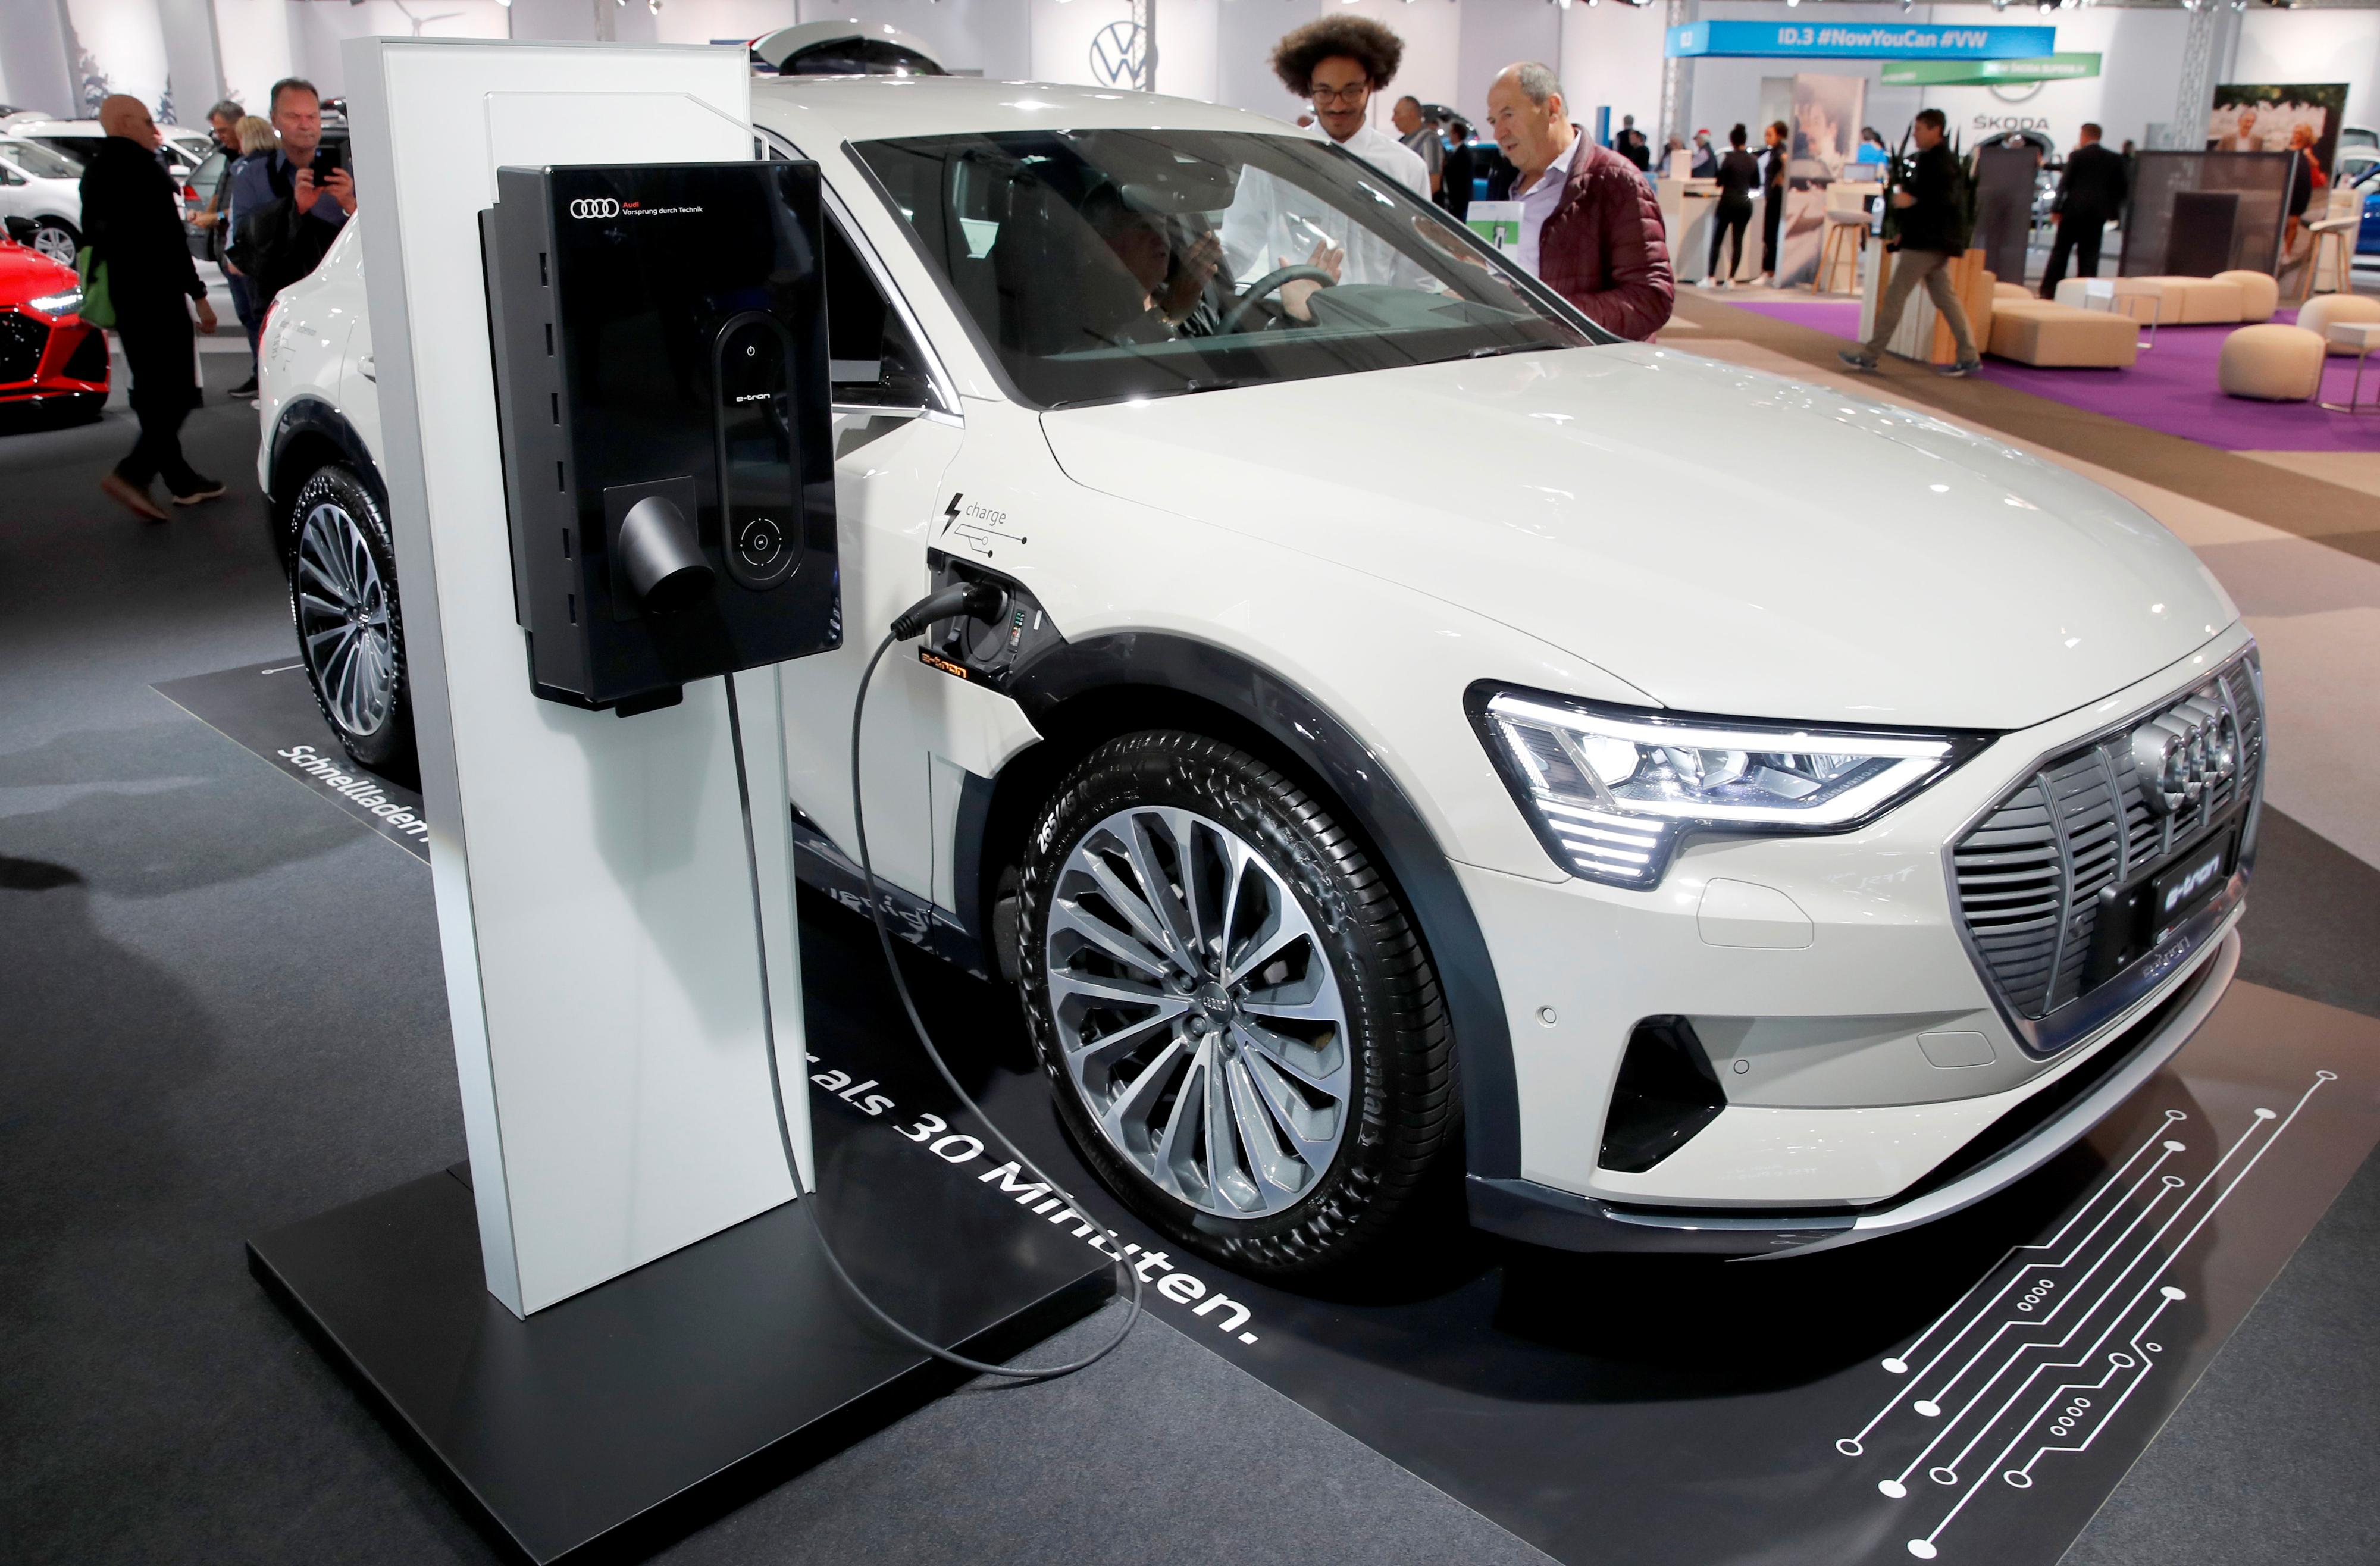 TRØBBEL: Audi har hatt problemer med sin helelektriske SUV. Her er en e-tron på lading under en bilmesse i Zürich torsdag.